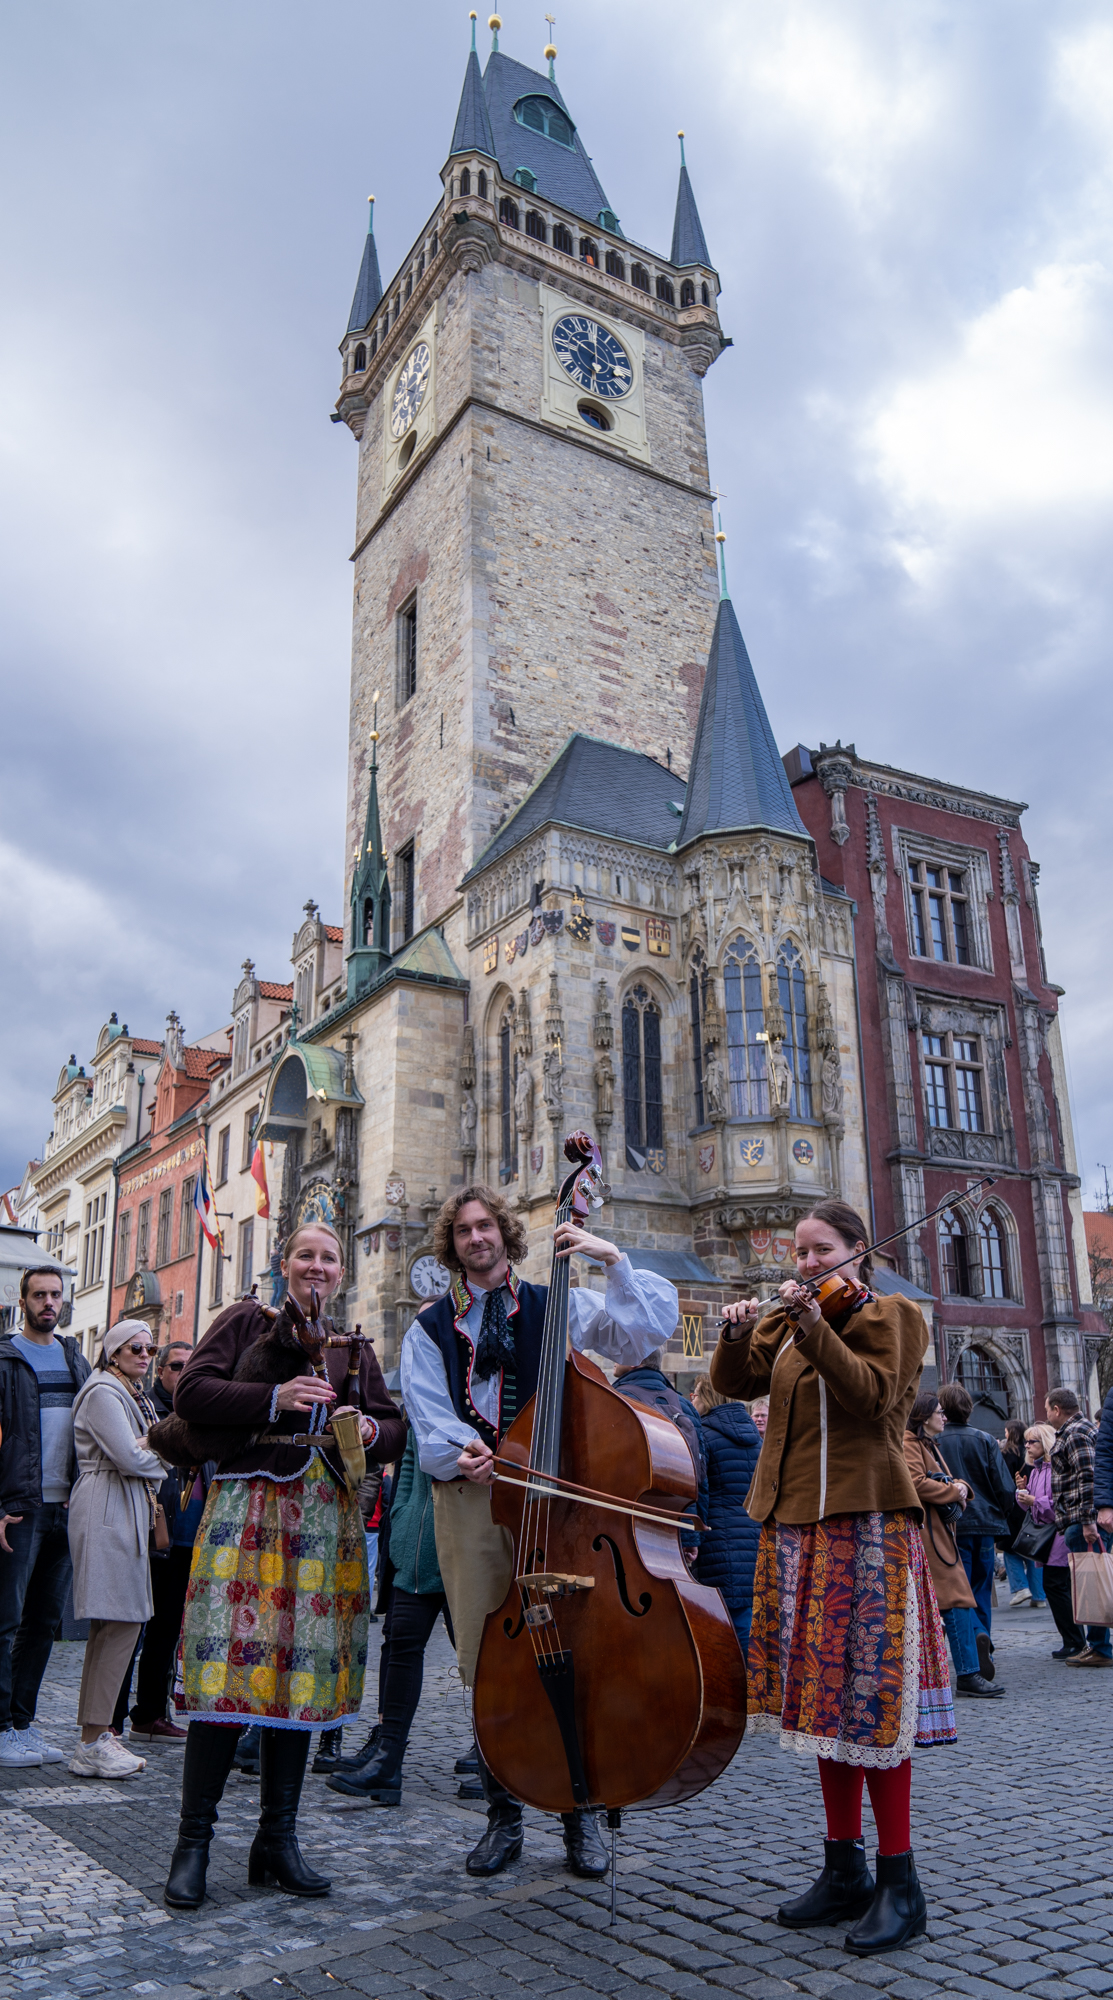 Oslava Velikonoc přinese do centra Prahy tradice a podpoří důraz na ekologii